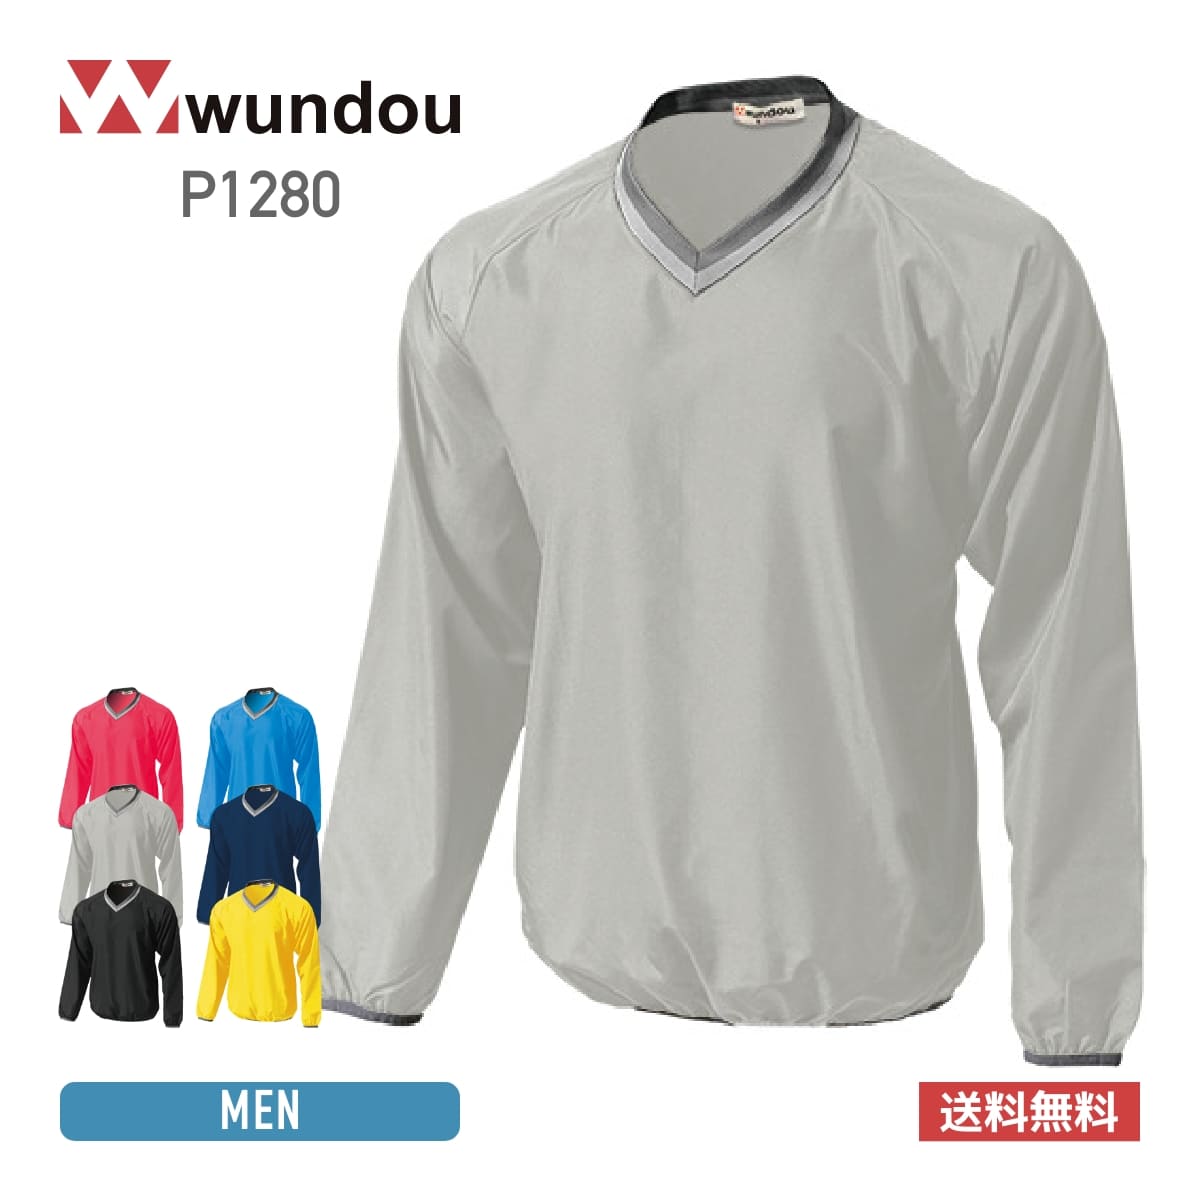 wundou(ウンドウ)激安通販 - Tshirt.stビジネス